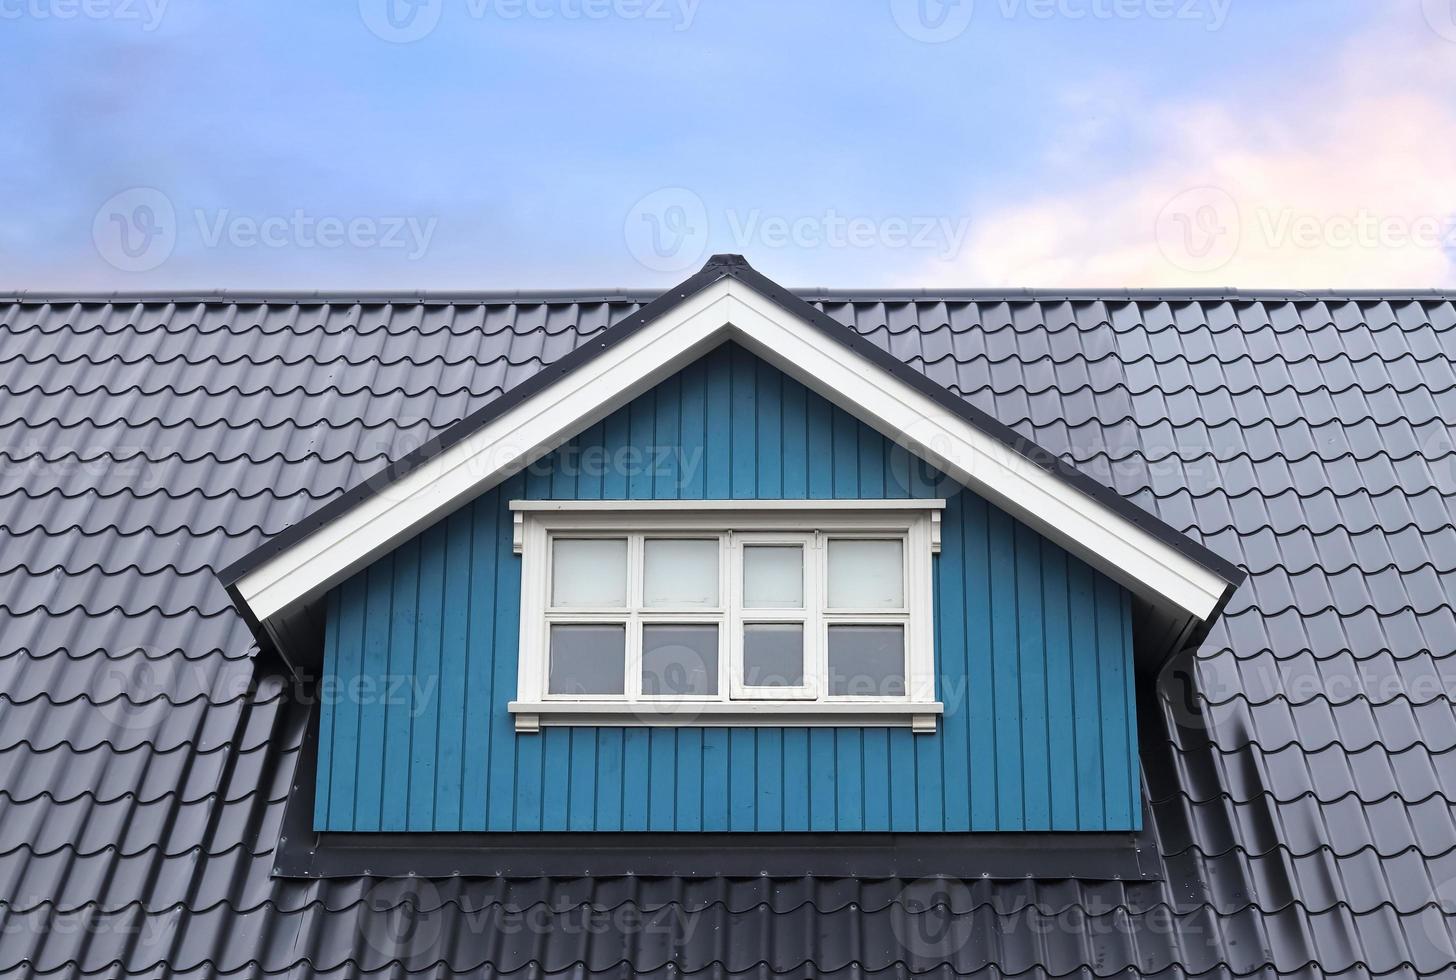 Dachfenster im Velux-Stil mit Dachziegeln - isländische Architektur. foto